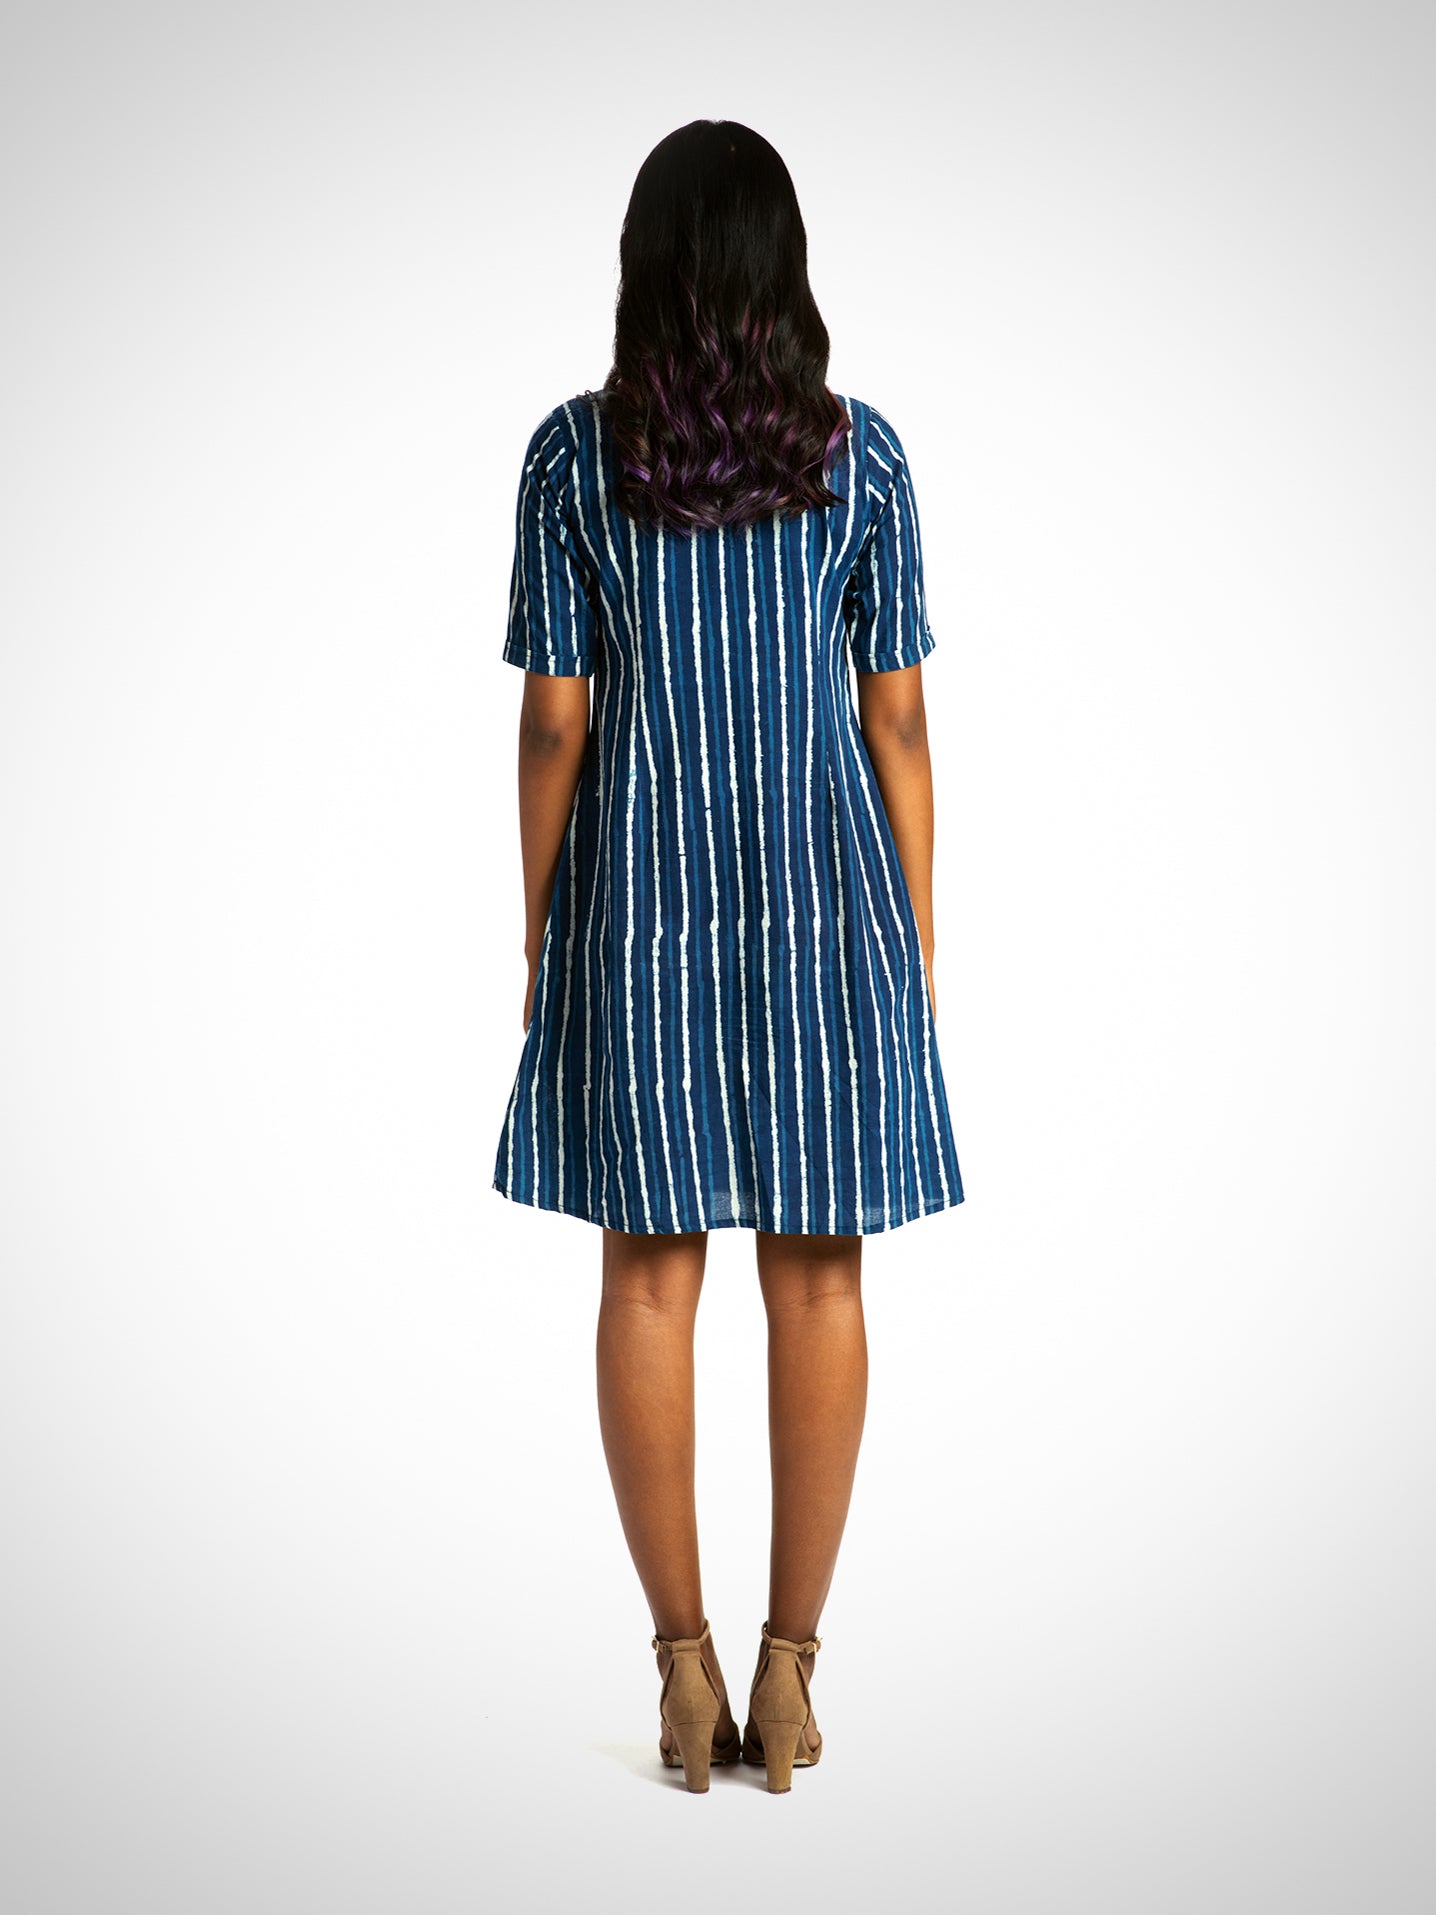 Indigo Blue Cotton Dress